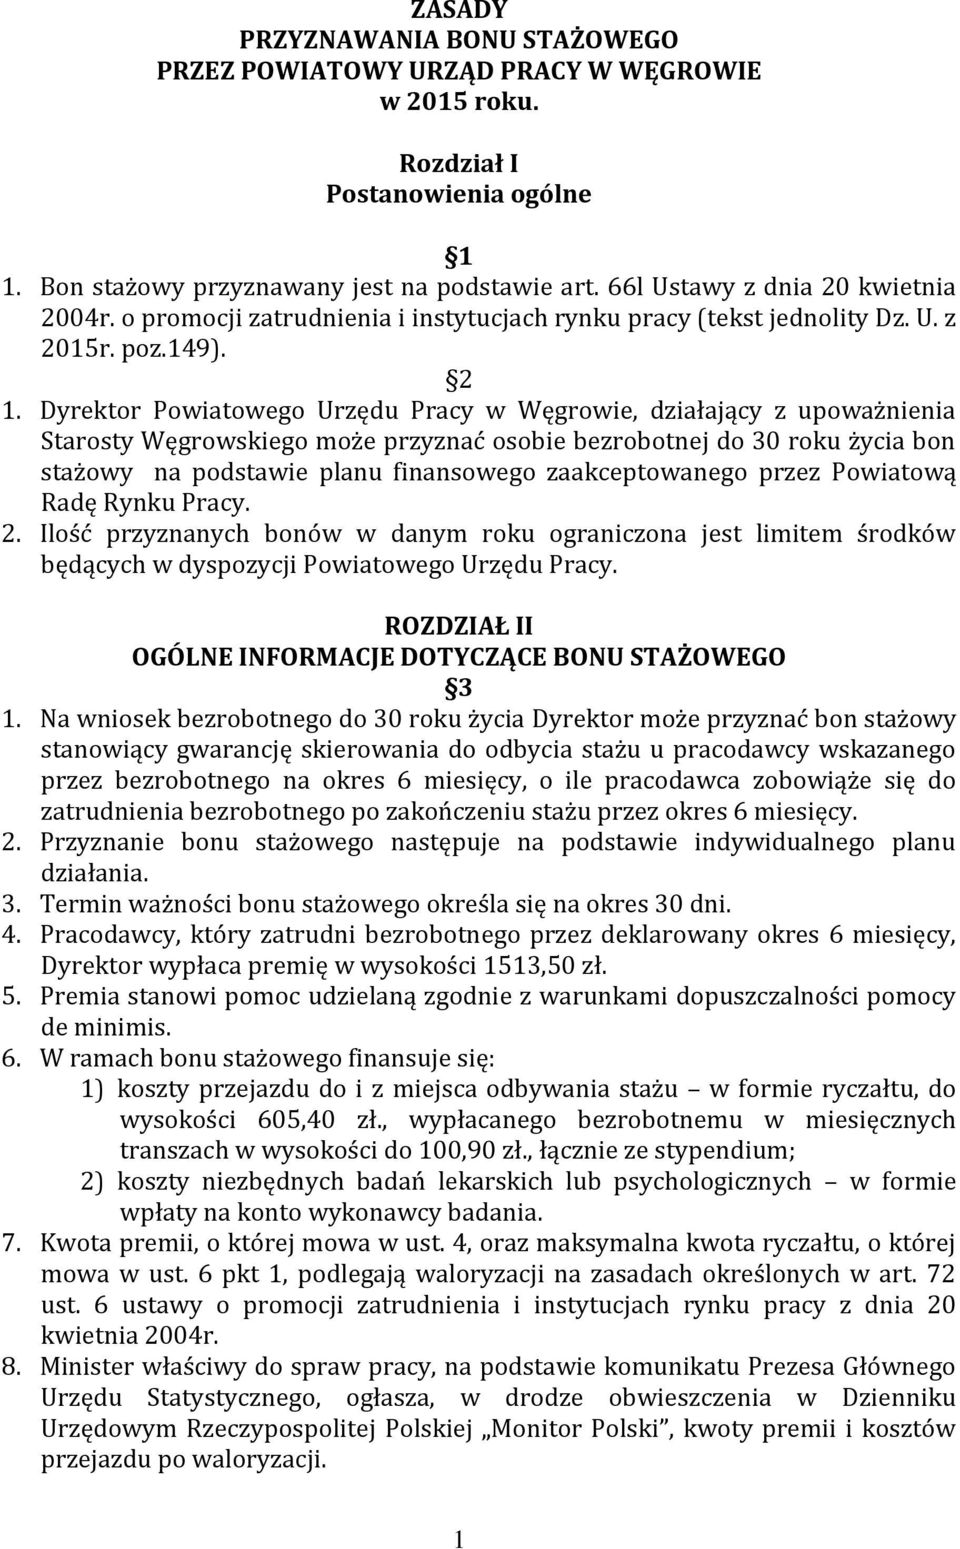 Dyrektor Powiatowego Urzędu Pracy w Węgrowie, działający z upoważnienia Starosty Węgrowskiego może przyznać osobie bezrobotnej do 30 roku życia bon stażowy na podstawie planu finansowego